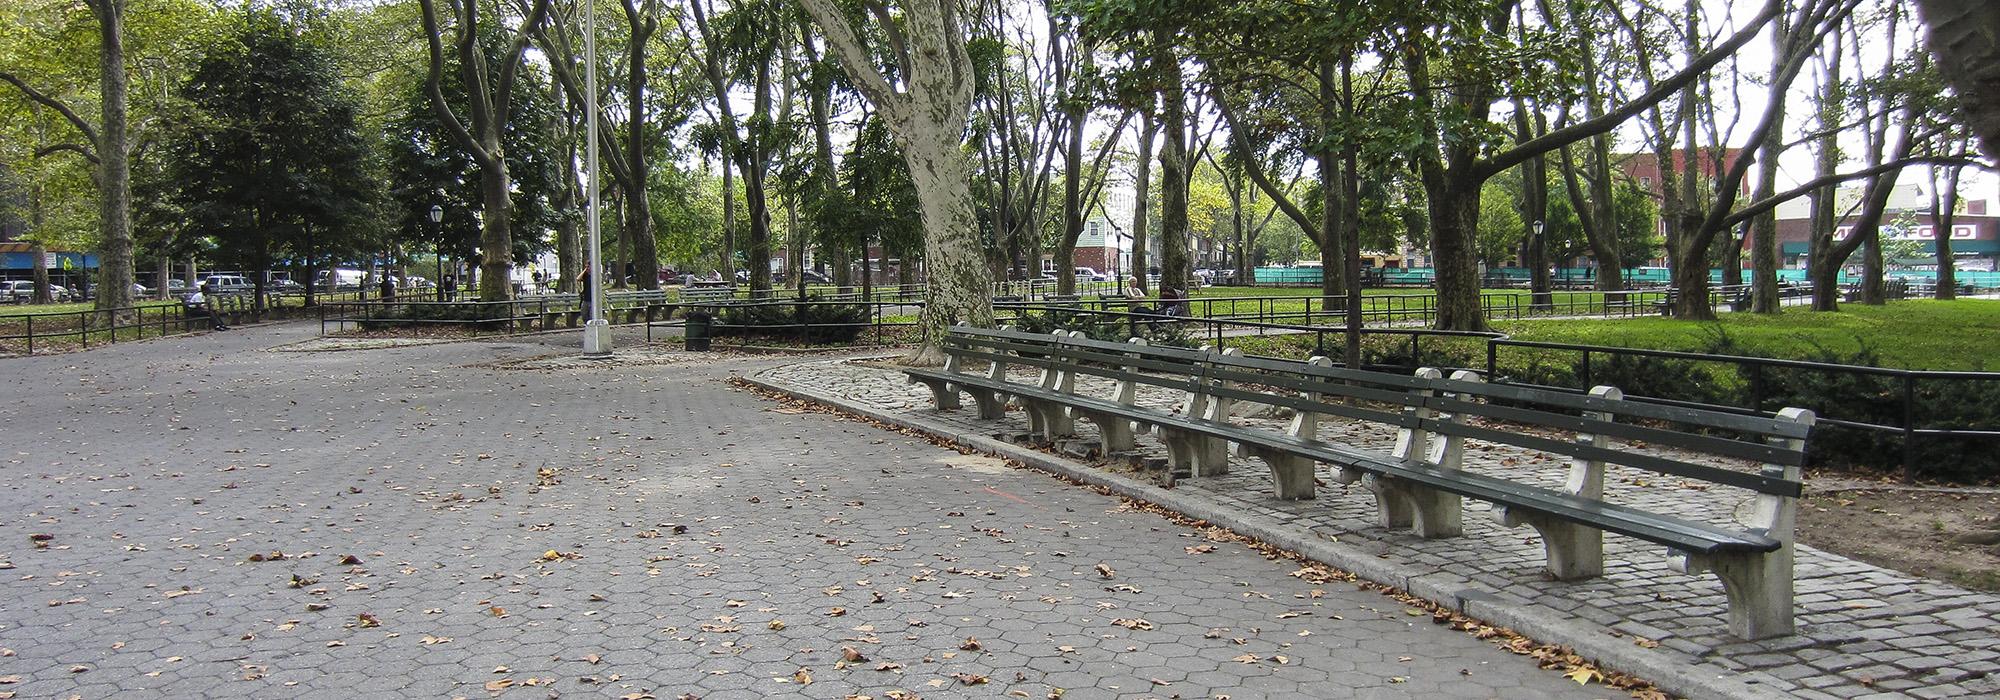 McGolrick Park, Brooklyn, NY